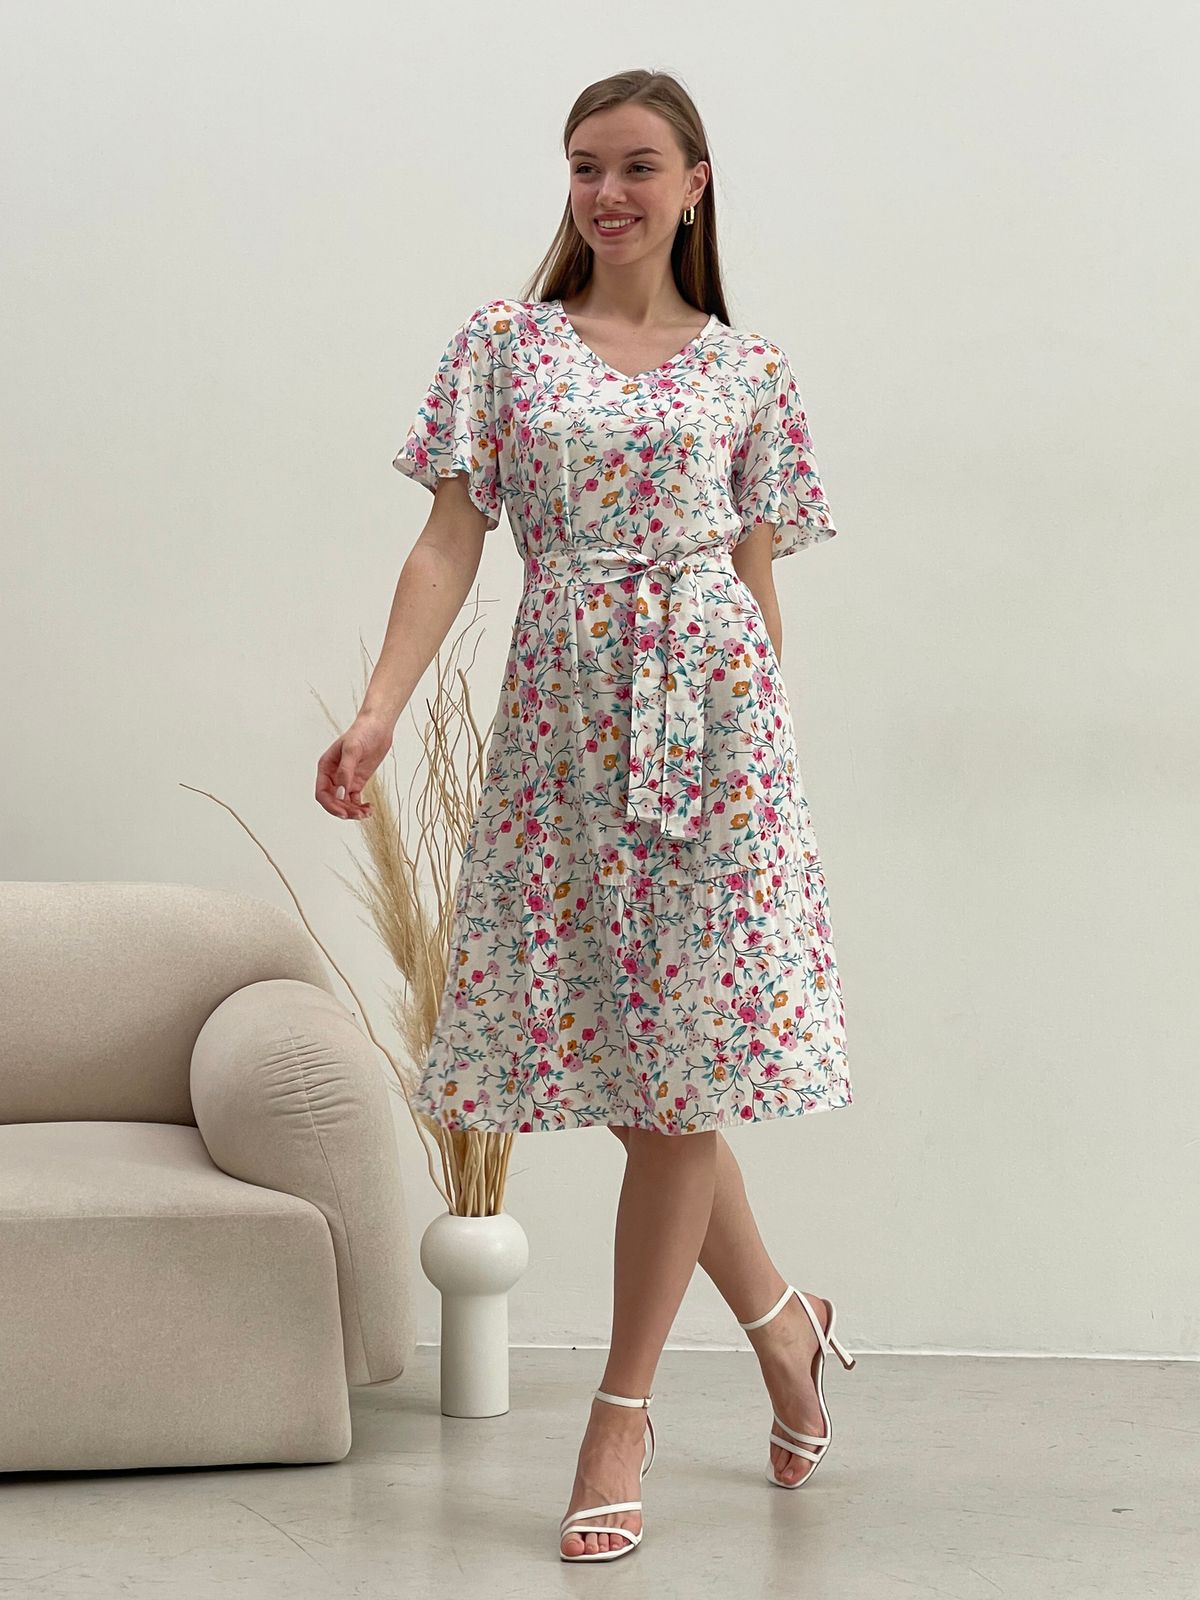 Купить Платье летнее ниже колен в цветочек белое Merlini Мискано 700001282 размер 42-44 (S-M) в интернет-магазине